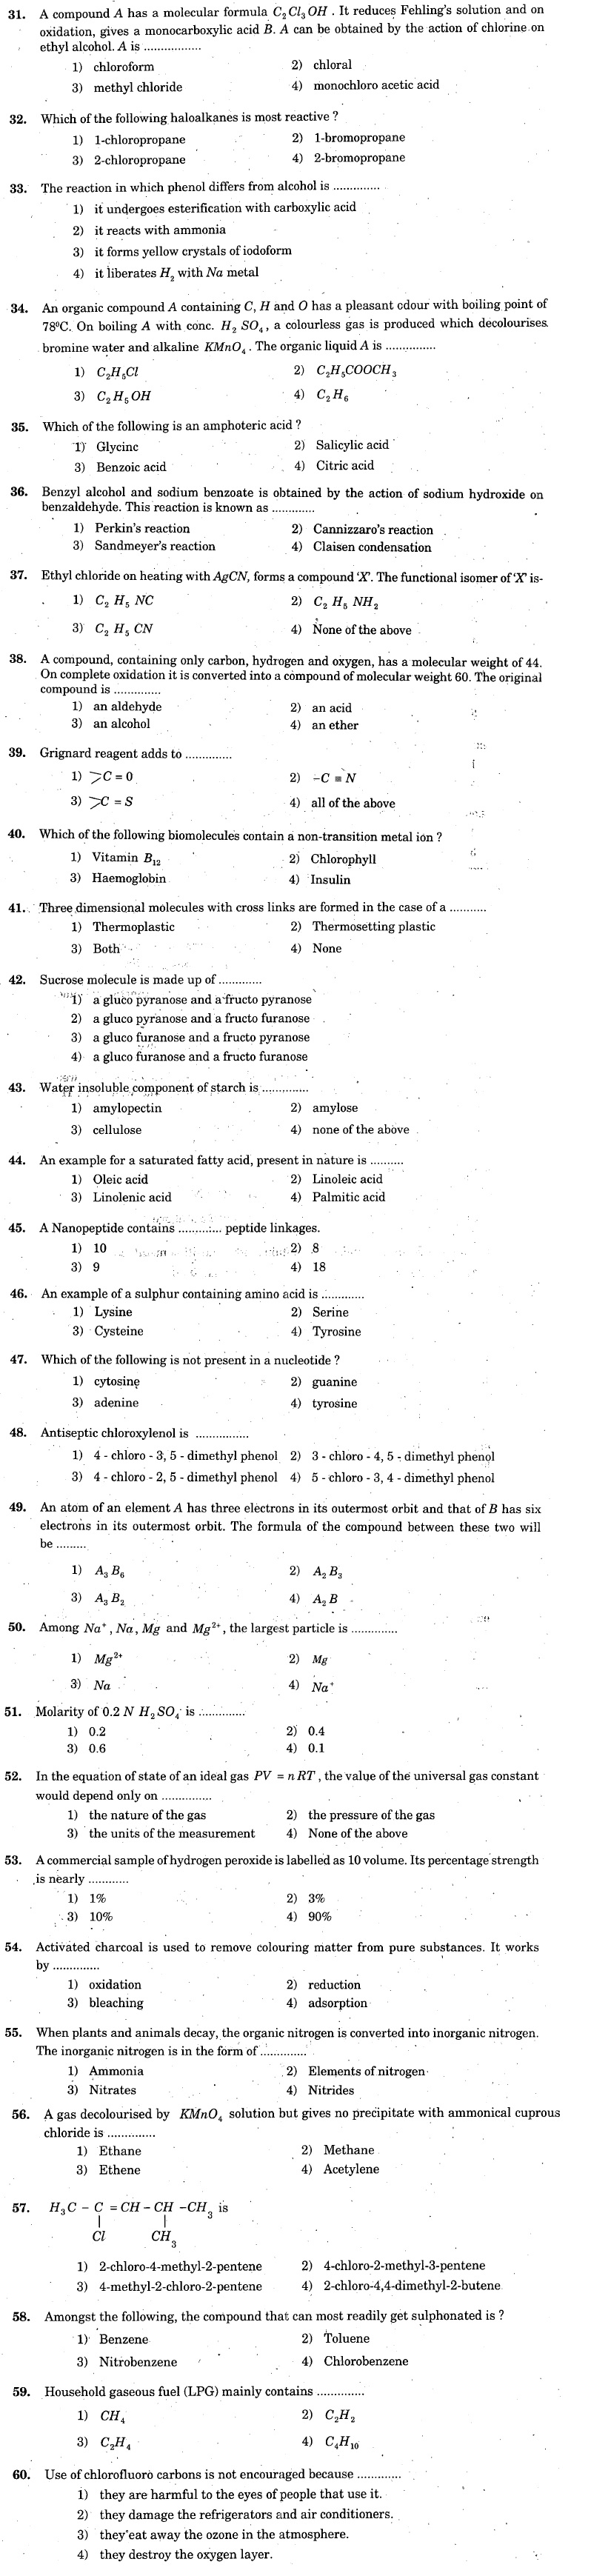 KCET 2005 Question Paper - Chemistry